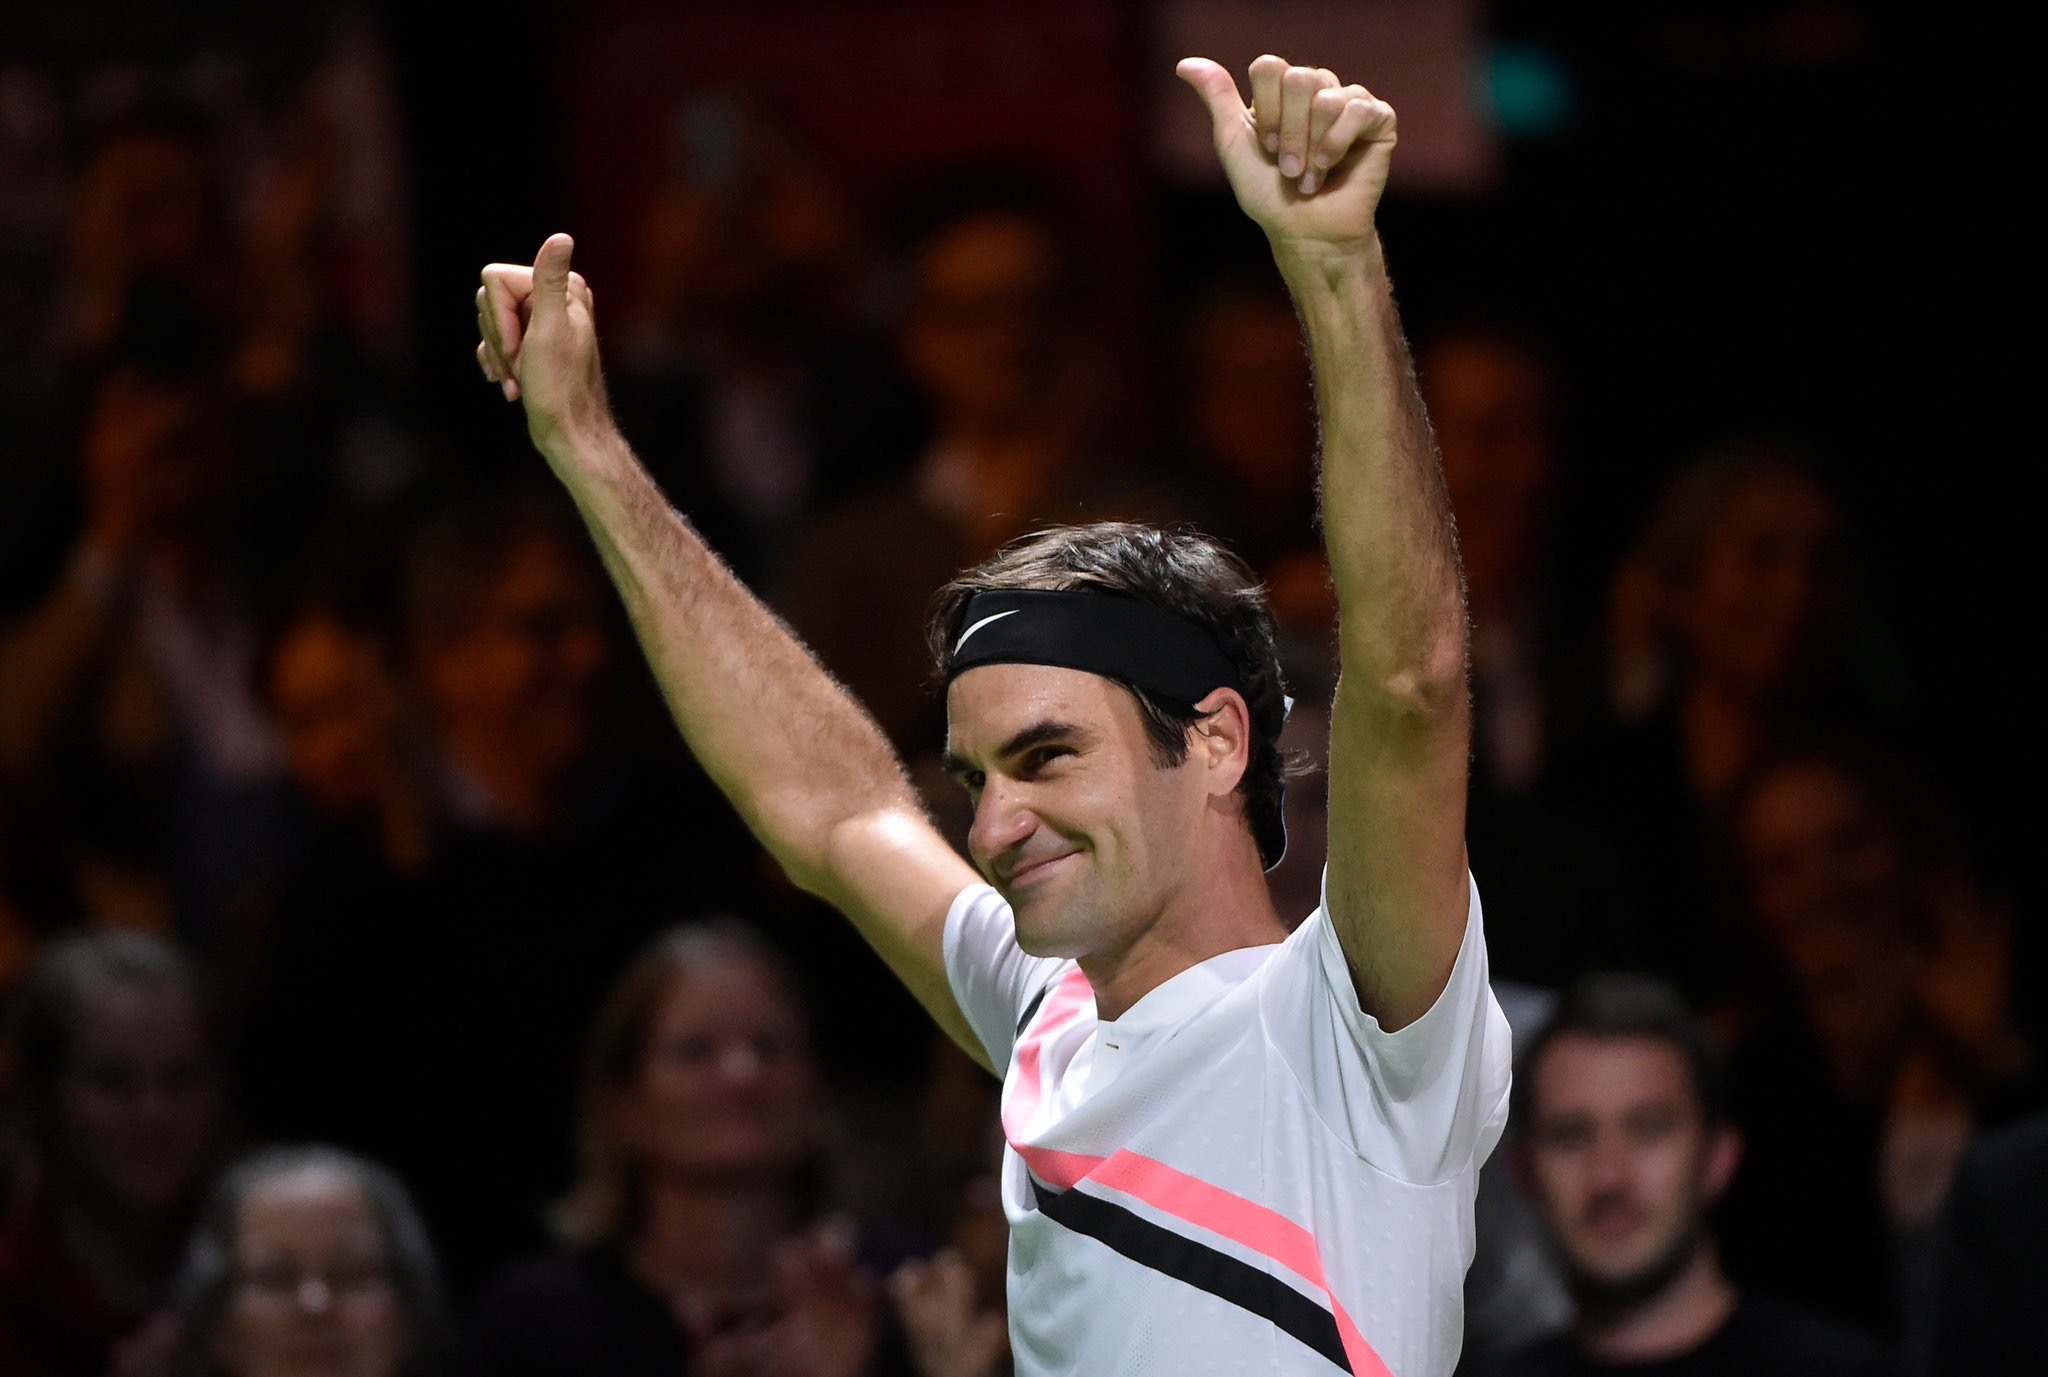 Roger Federer 2018 Rotterdam Open - ABN AMRO World Tennis Tournament - Federer Makes History in Return to World #1